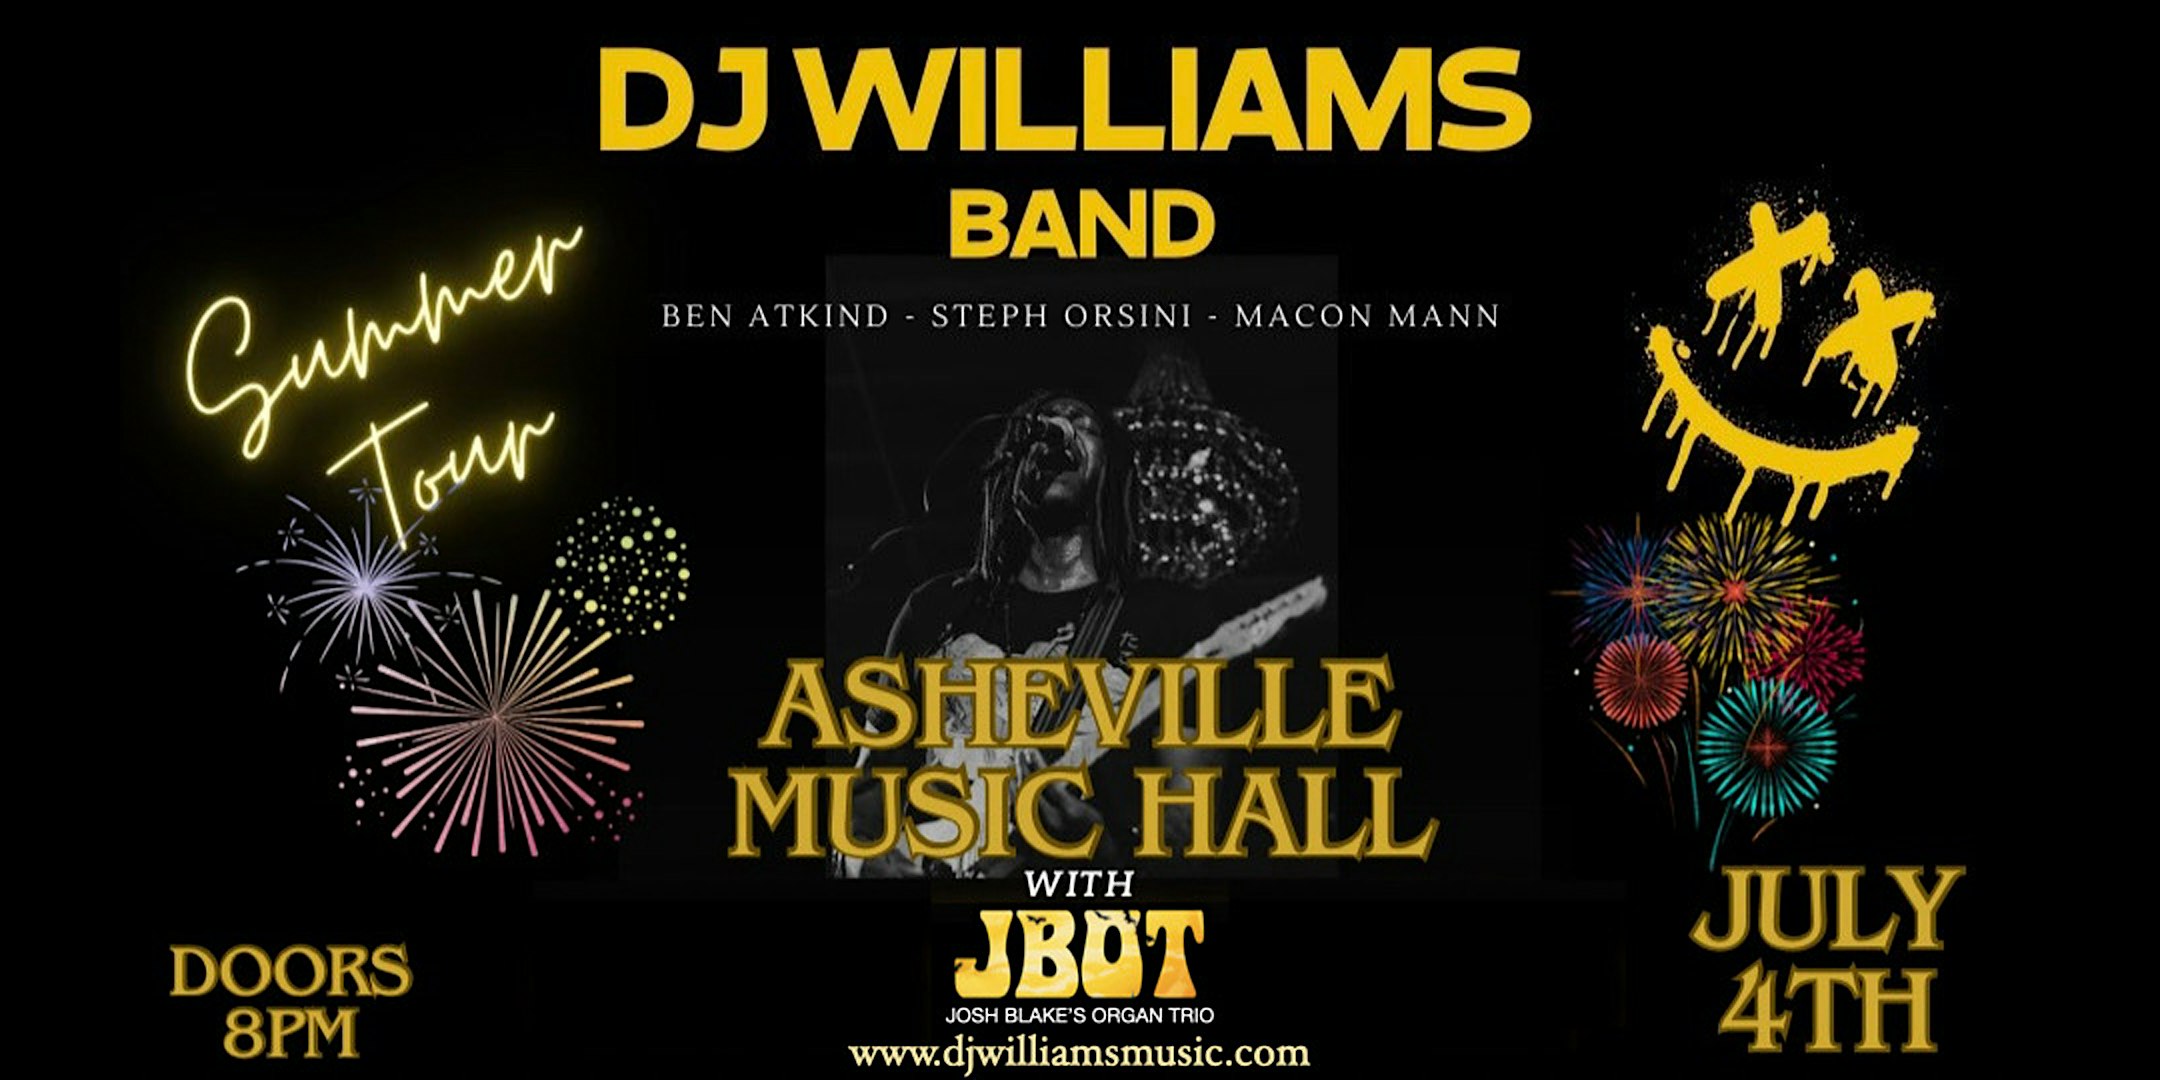 DJ Williams Band + JBOT